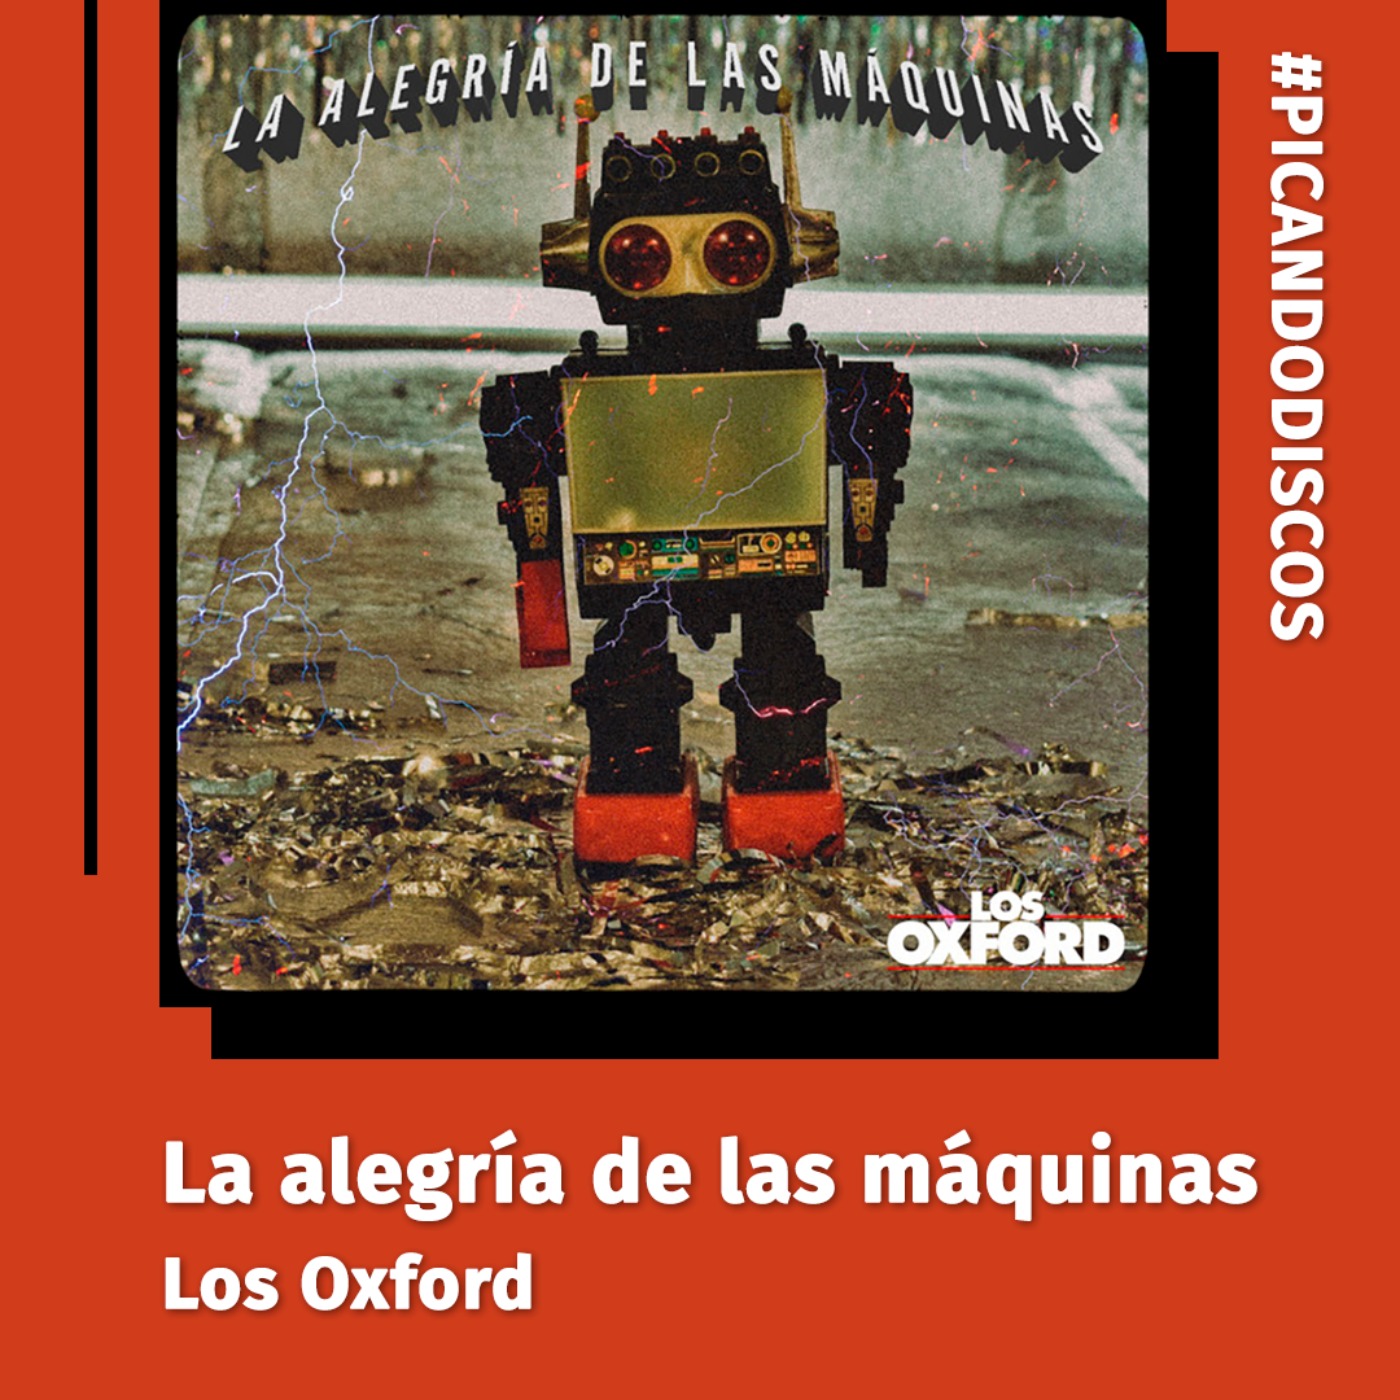 cover art for "La alegría de las máquinas", Los Oxford